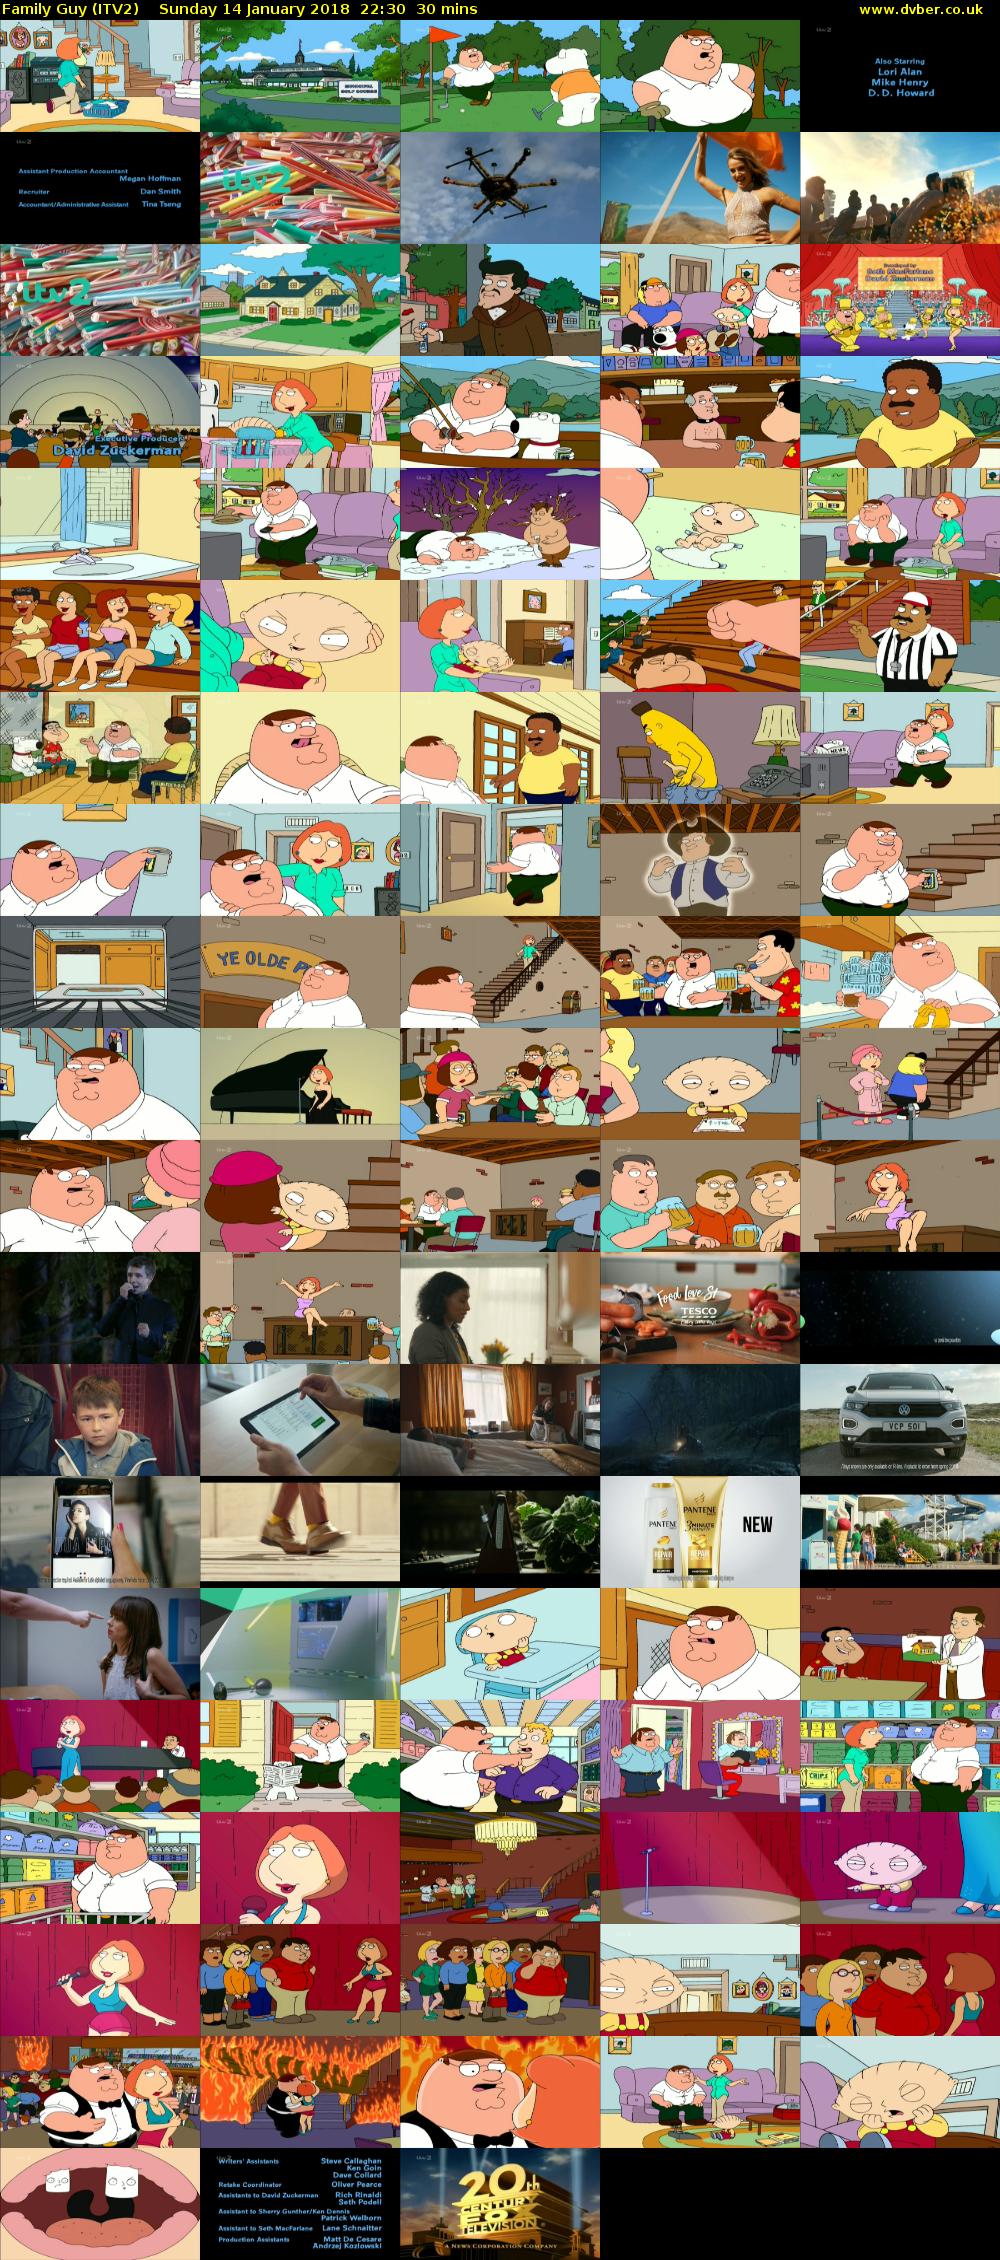 Family Guy (ITV2) Sunday 14 January 2018 22:30 - 23:00